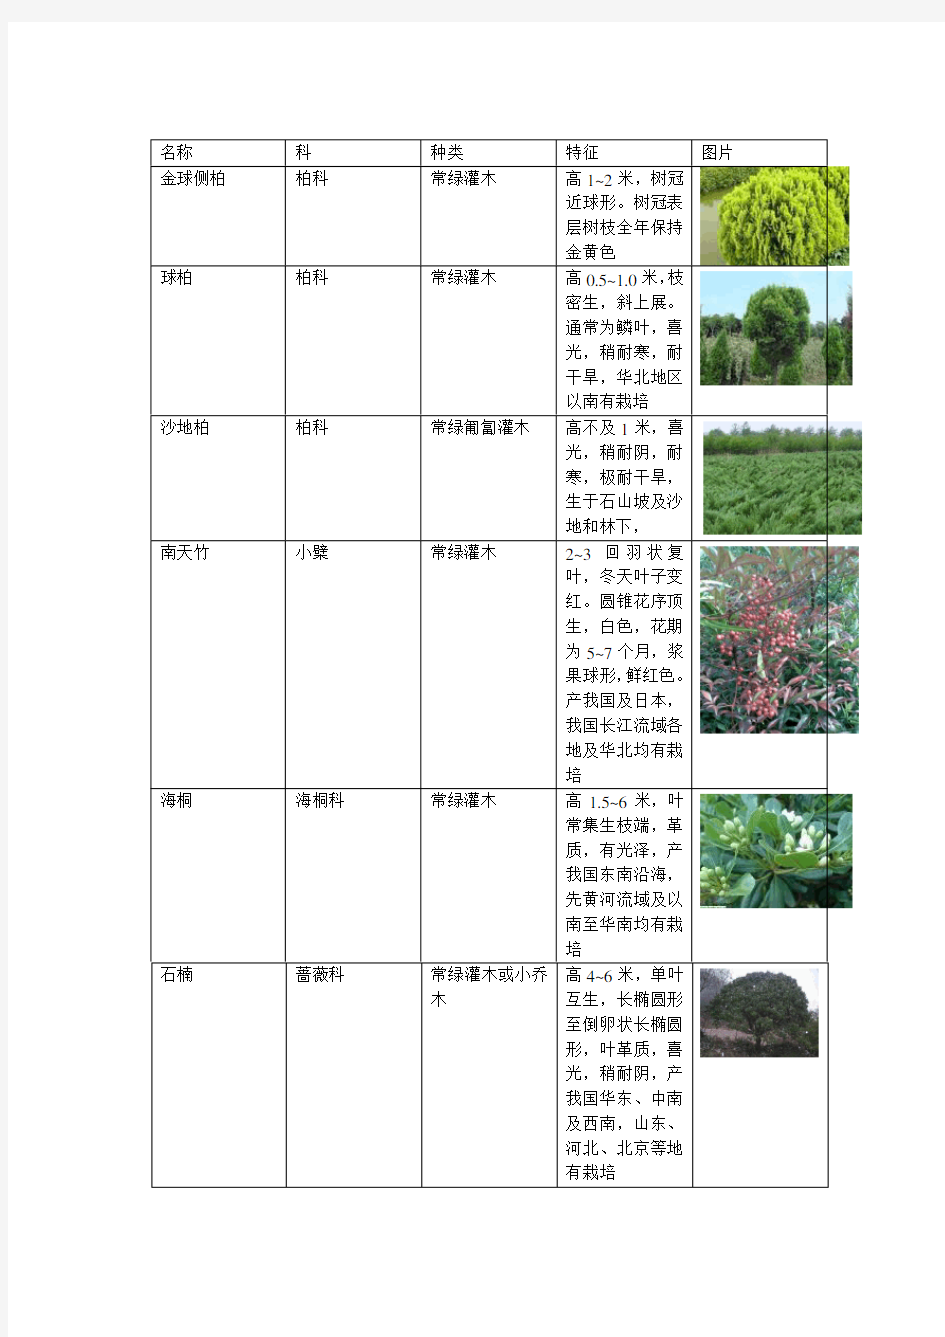 乔木、灌木、地被植物说明图表 3